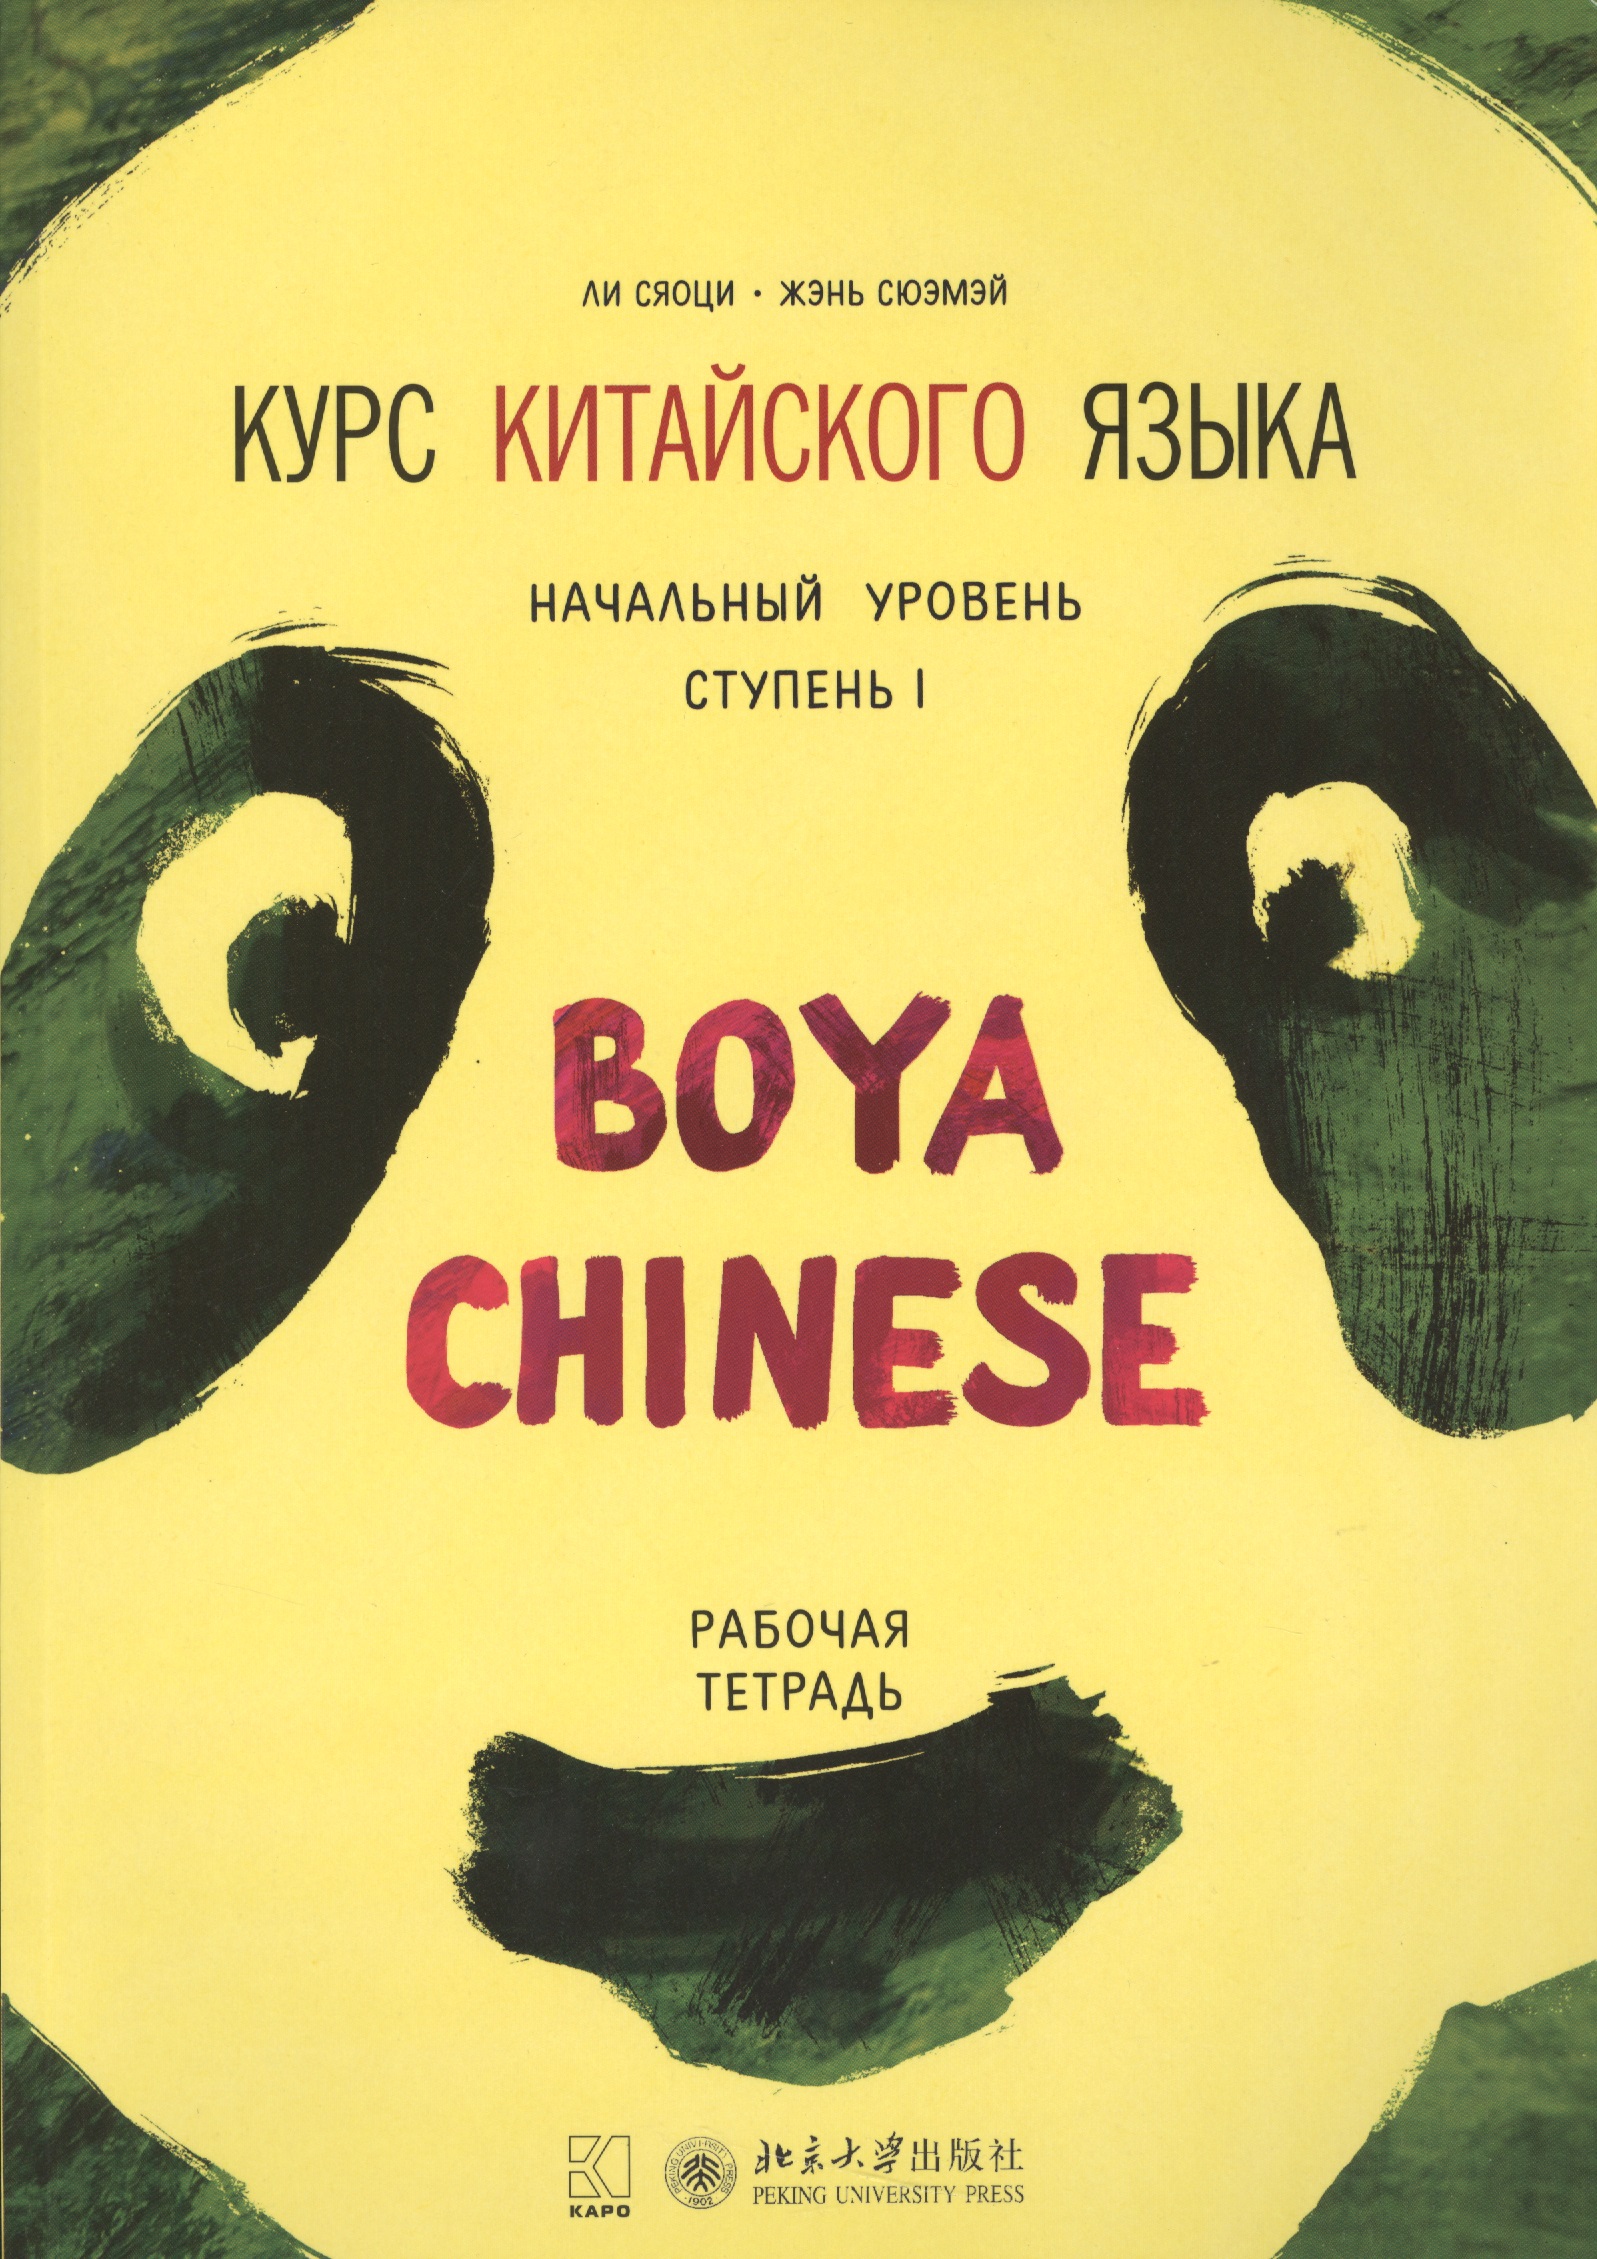 Ли Сяоци - Курс китайского языка Boya Chinese. Начальный уровень. Ступень 1. Рабочая тетрадь